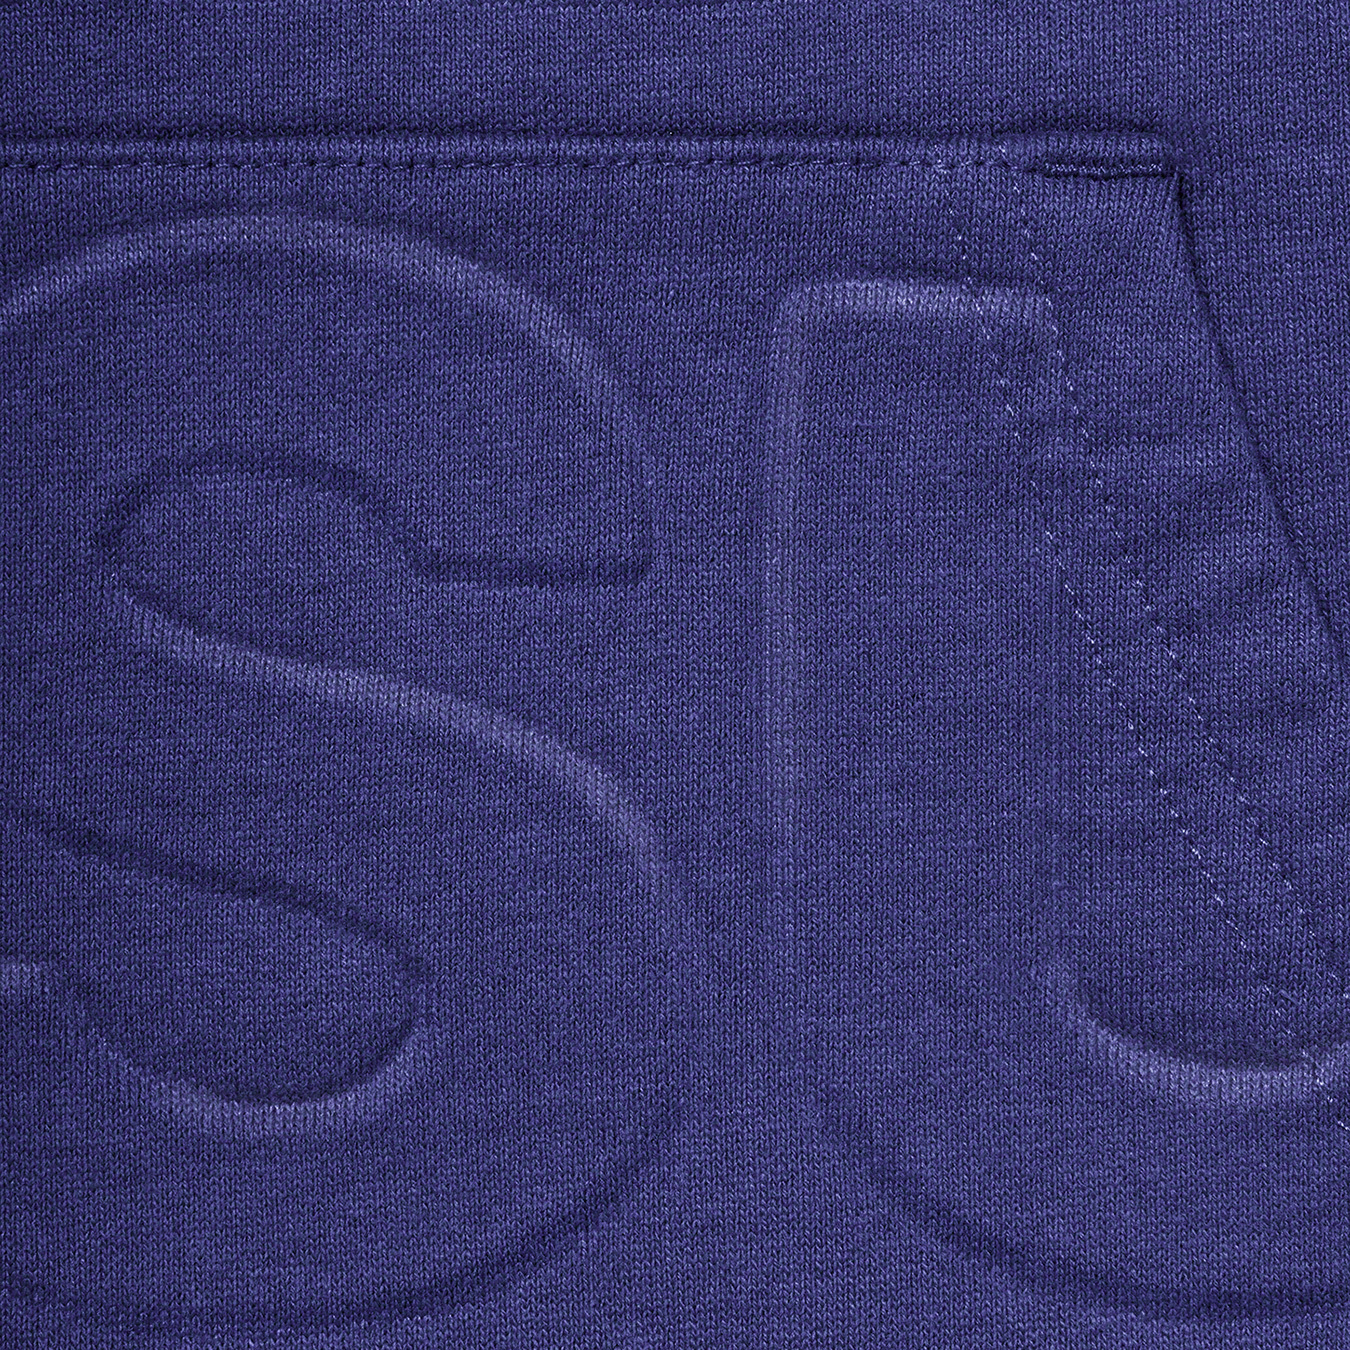 Embossed Logos Hooded Sweatshirt - spring summer 2021 - Supreme